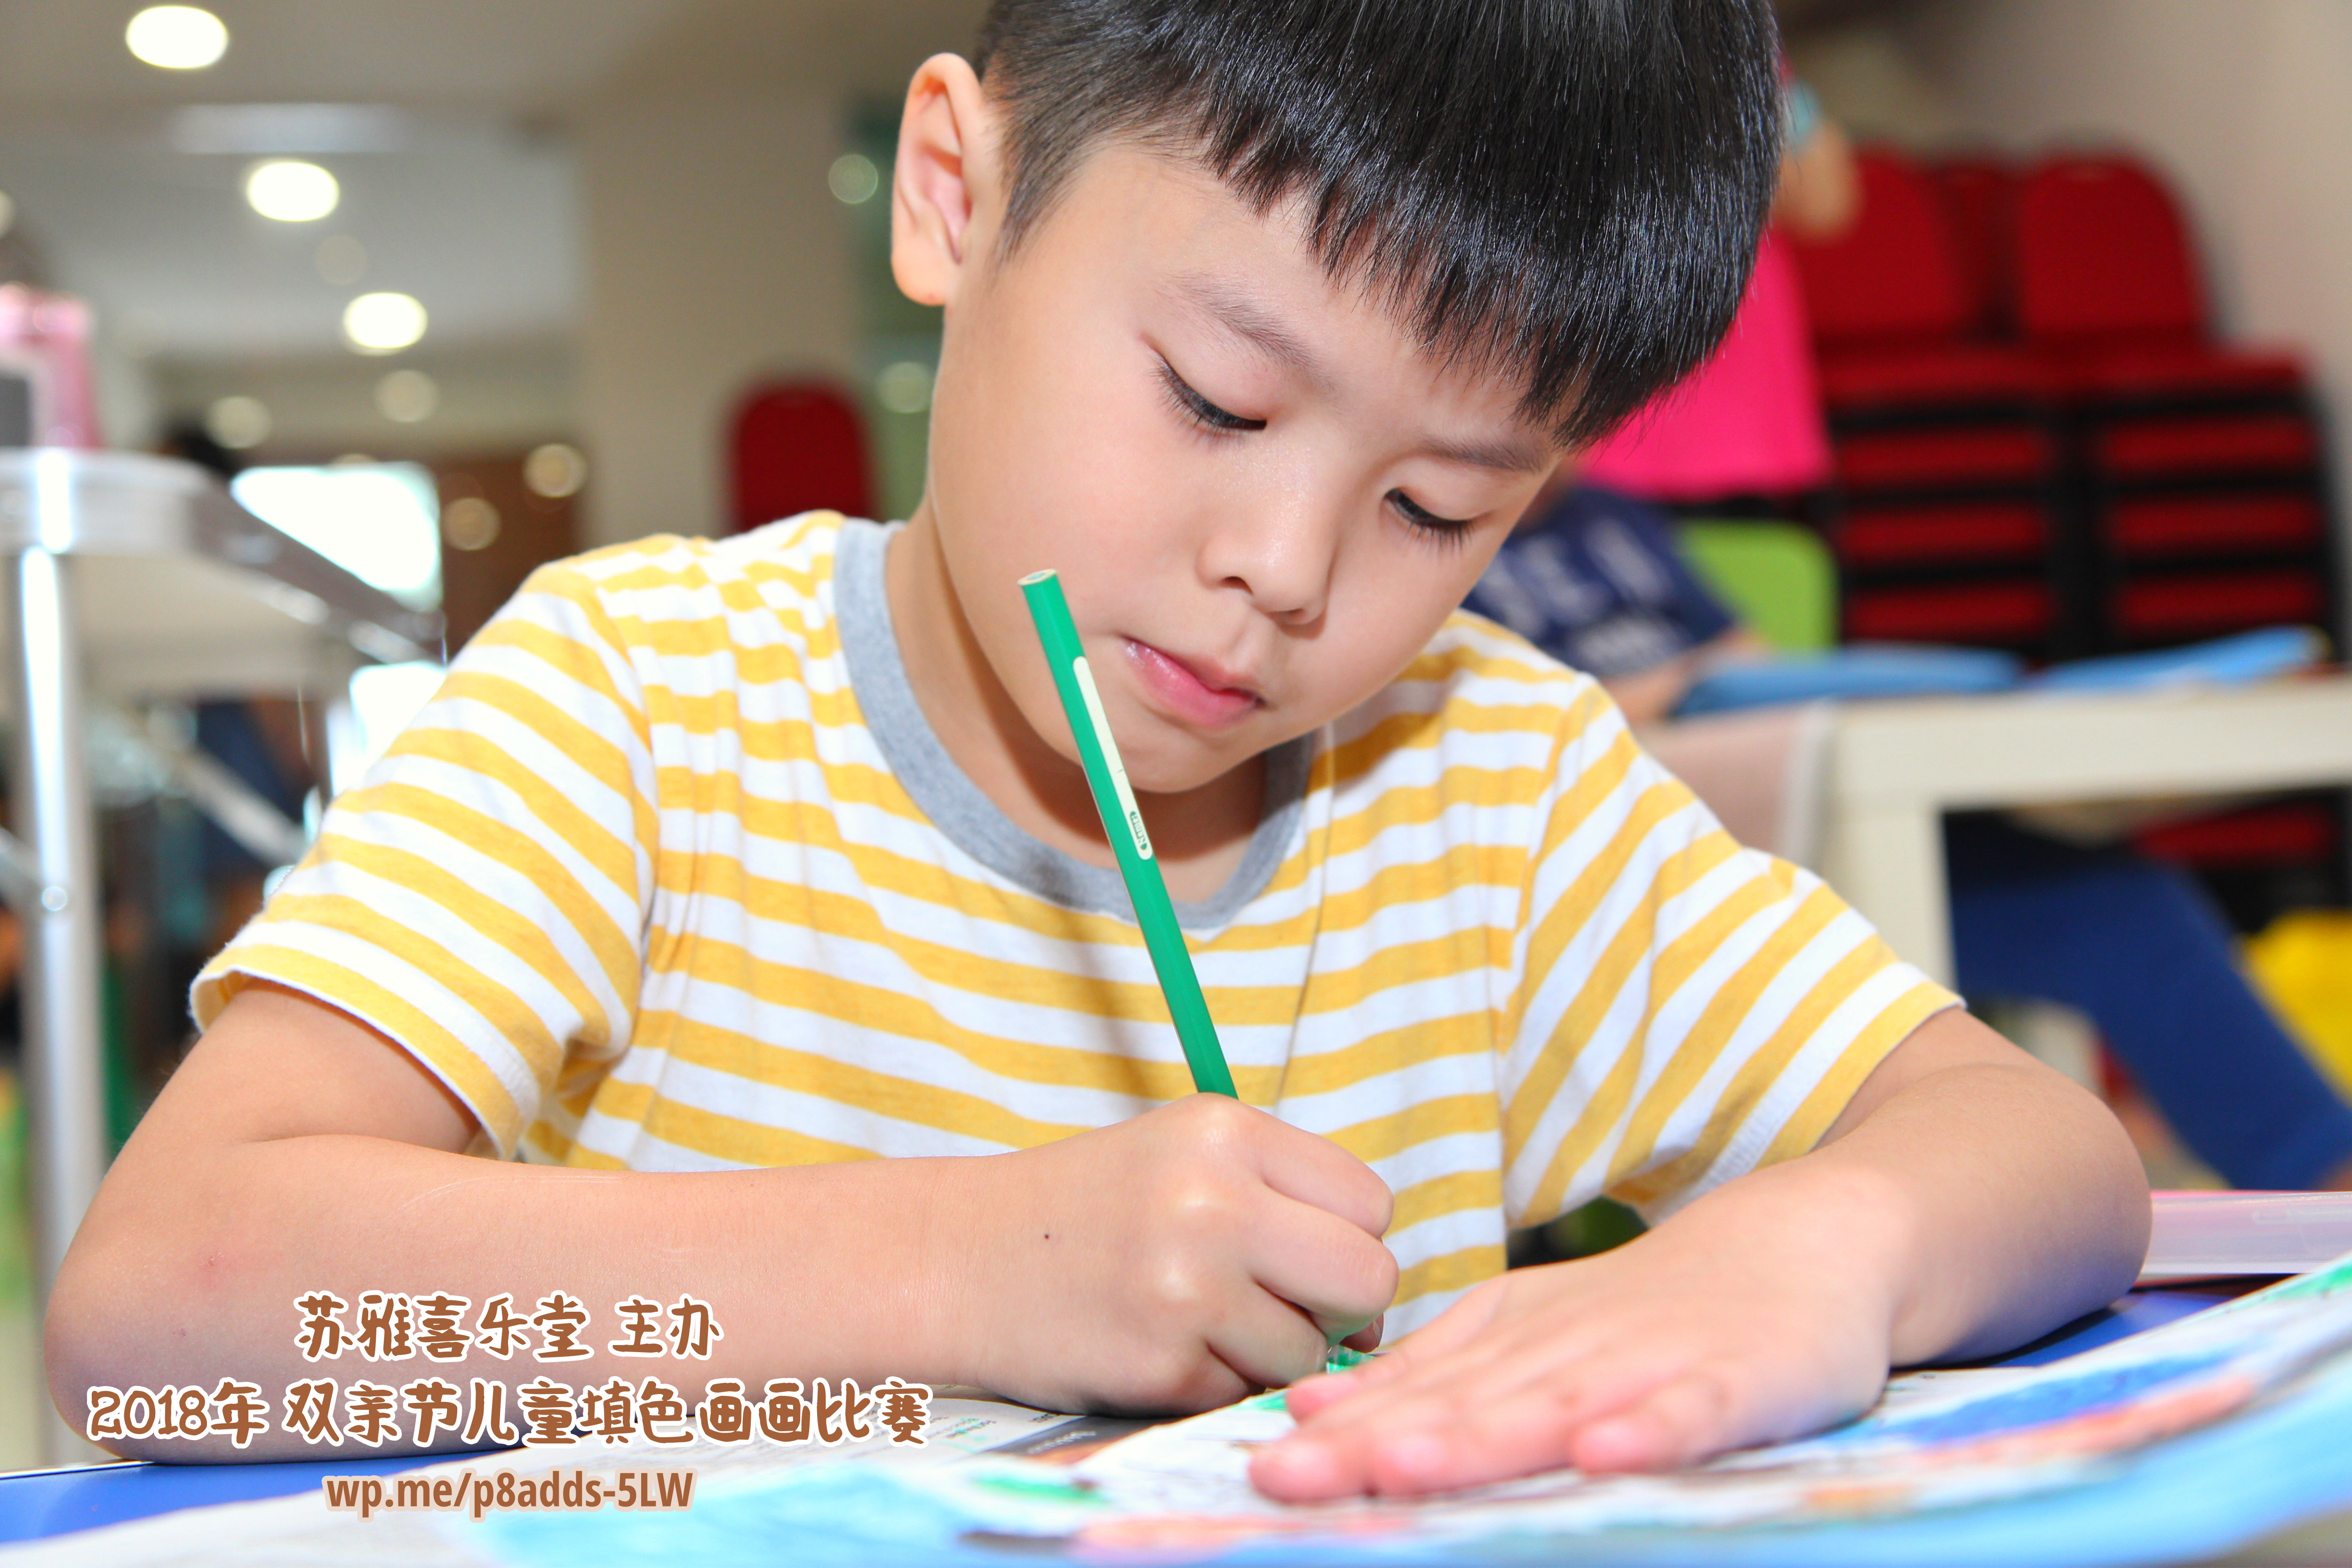 Batu Pahat Gereja Joy Soga Colouring Contest 苏雅喜乐堂主办2018年 峇株巴辖双亲节儿童填色画画比赛 培养儿童对彩色画画的兴趣 发掘美术的潜能 B1-33